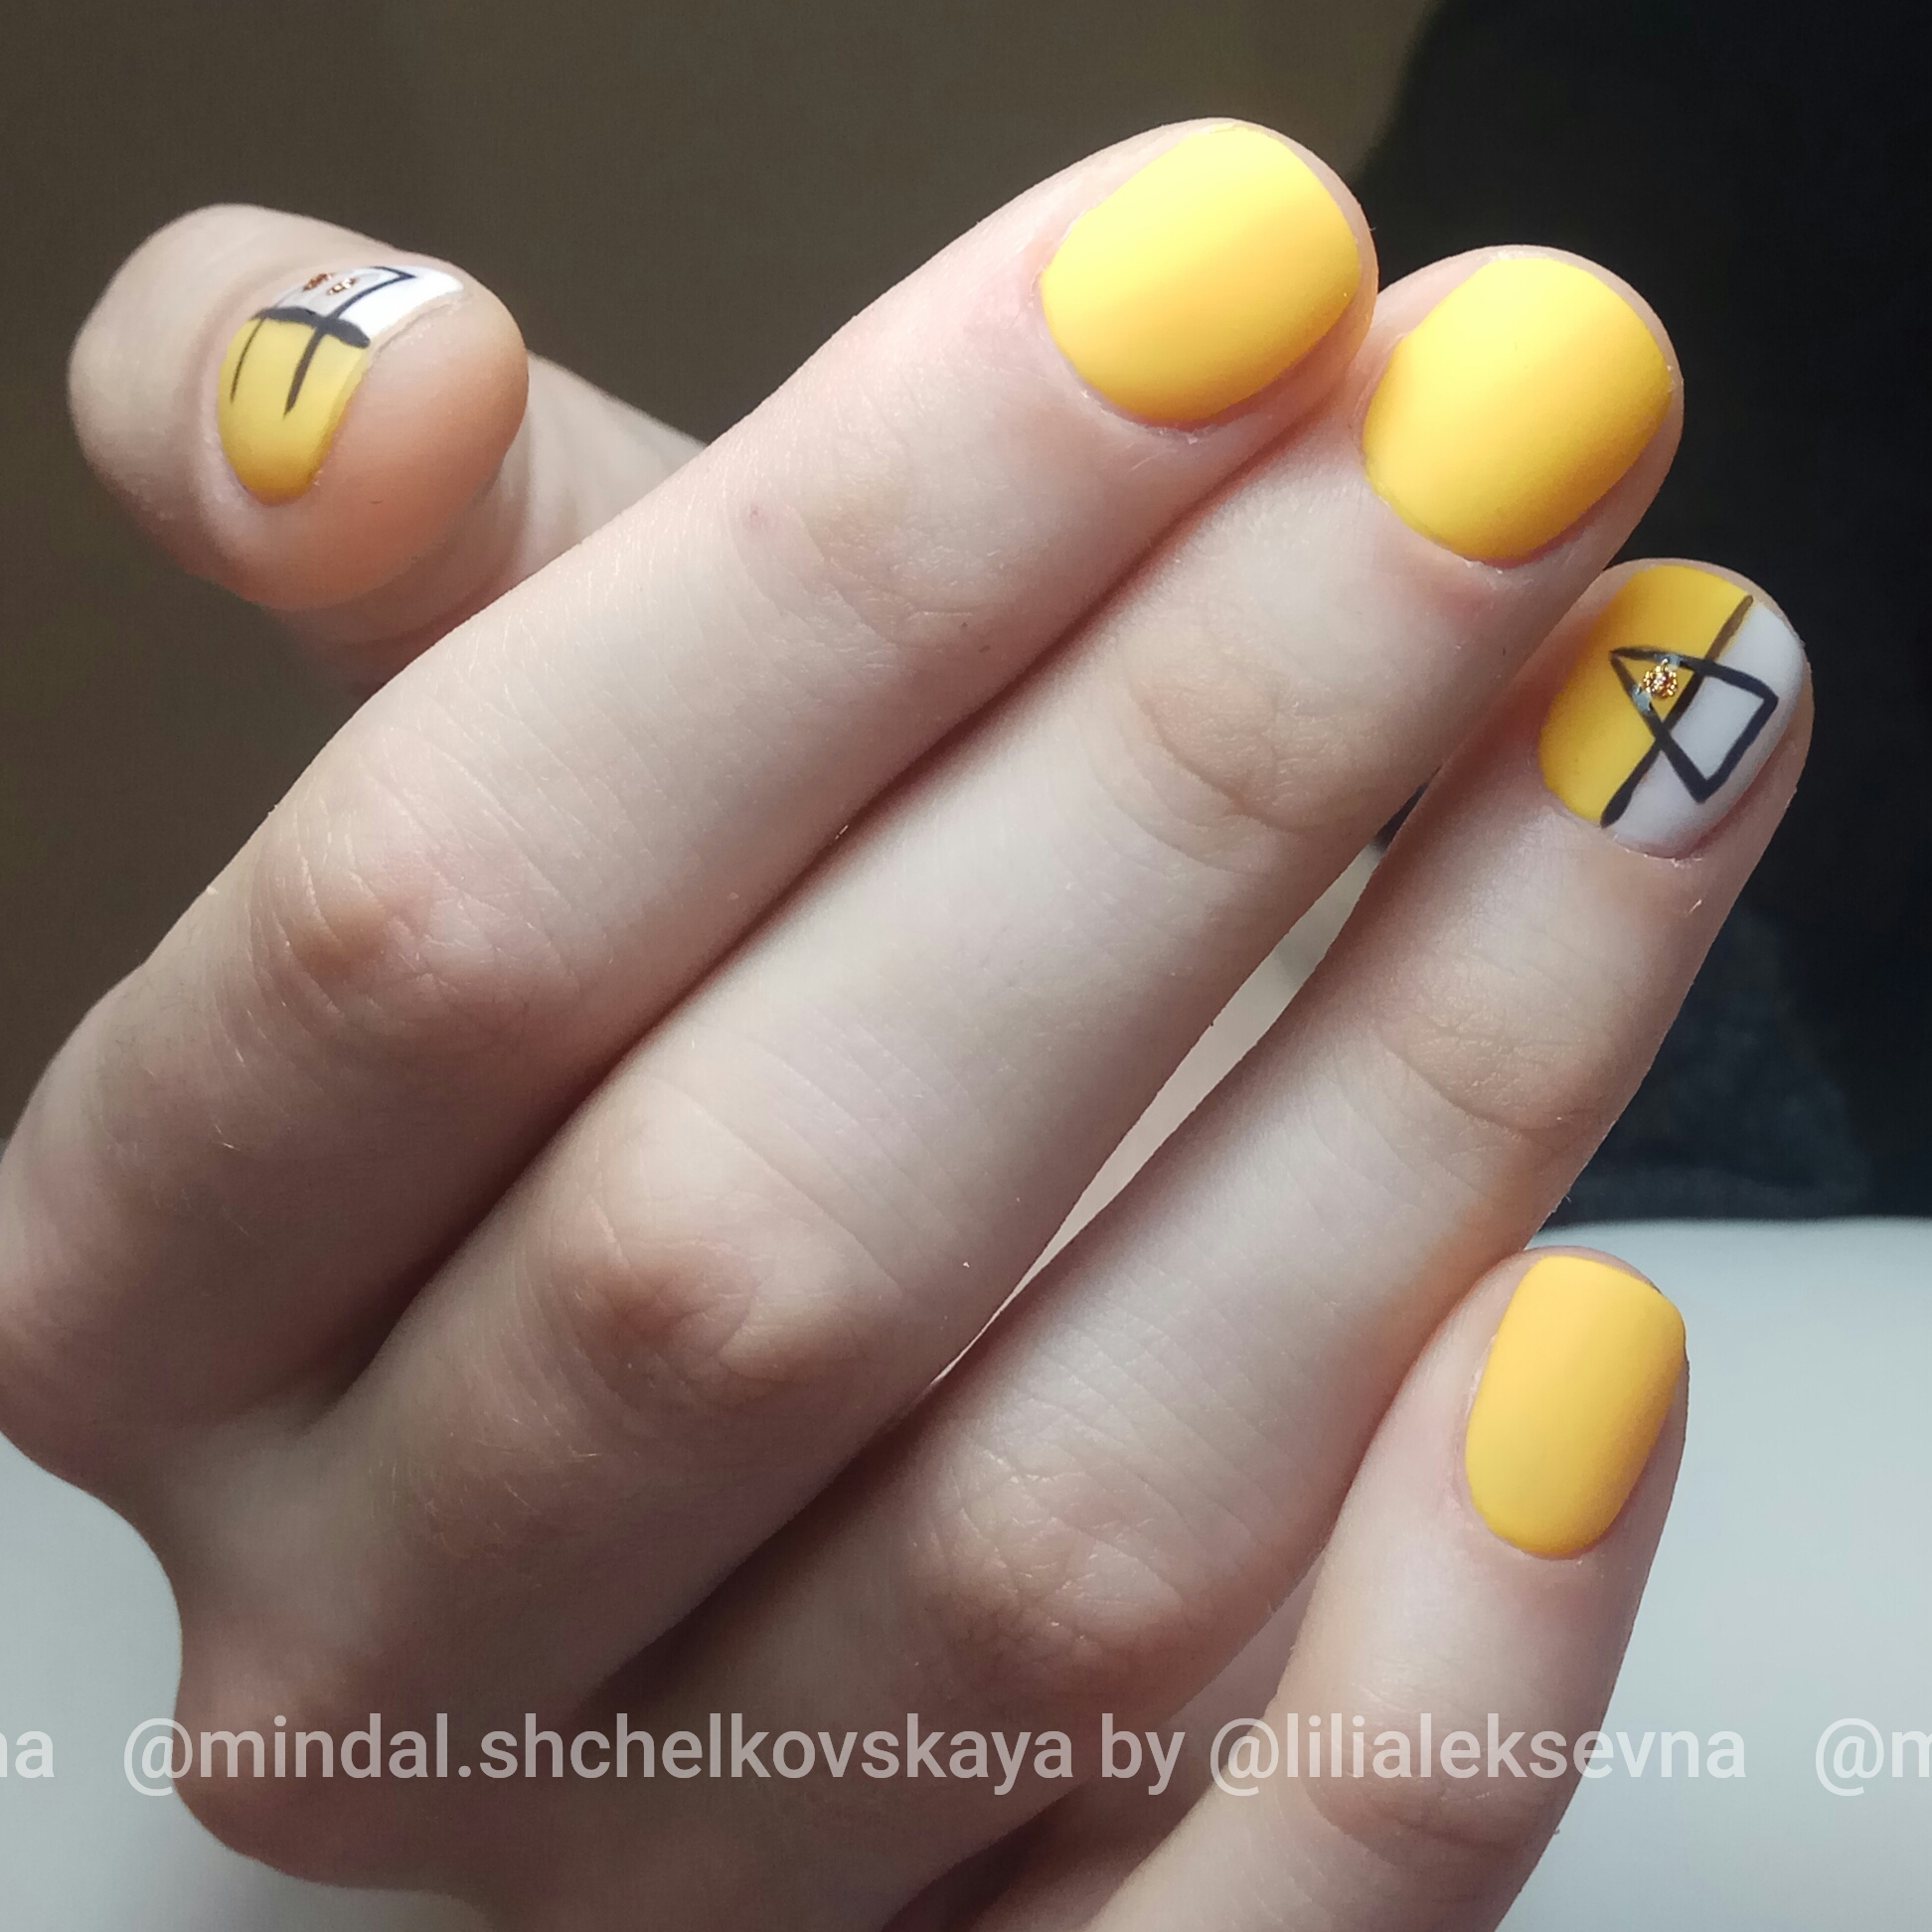 Матовый однотонный маникюр в жёлтом цвете с геометрическим рисунком.